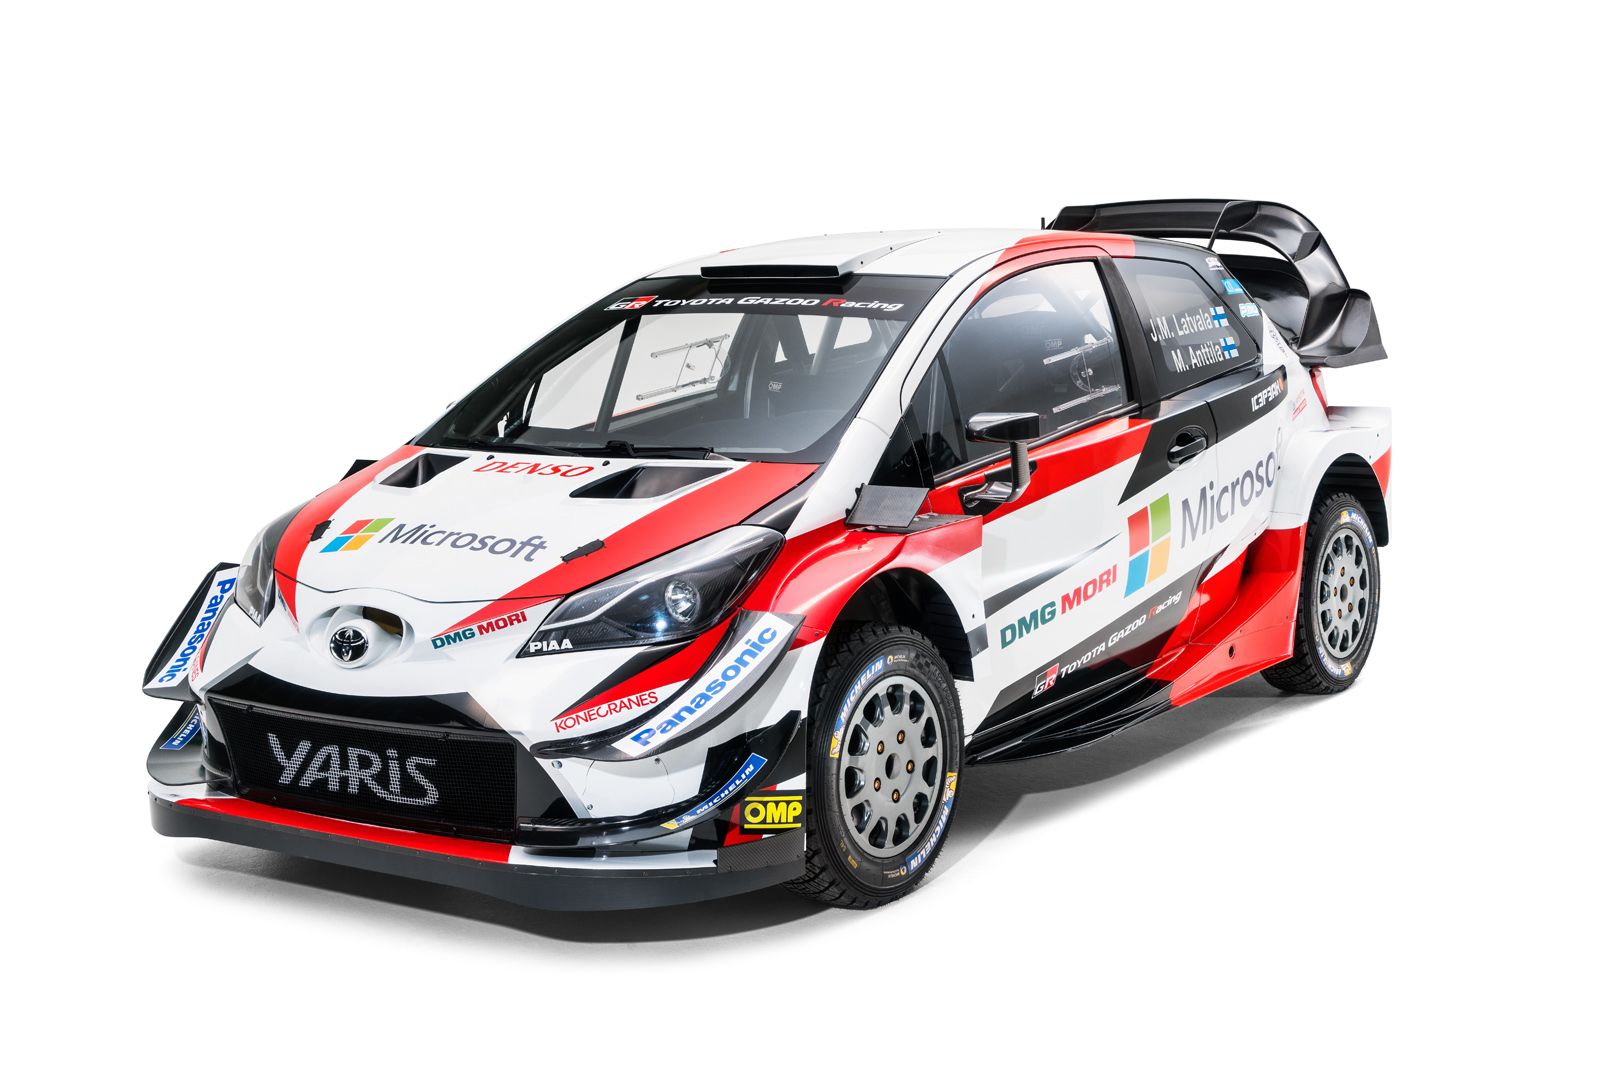 Inilah Jagoan Toyota Di WRC 2018 Yaris Versi Rally